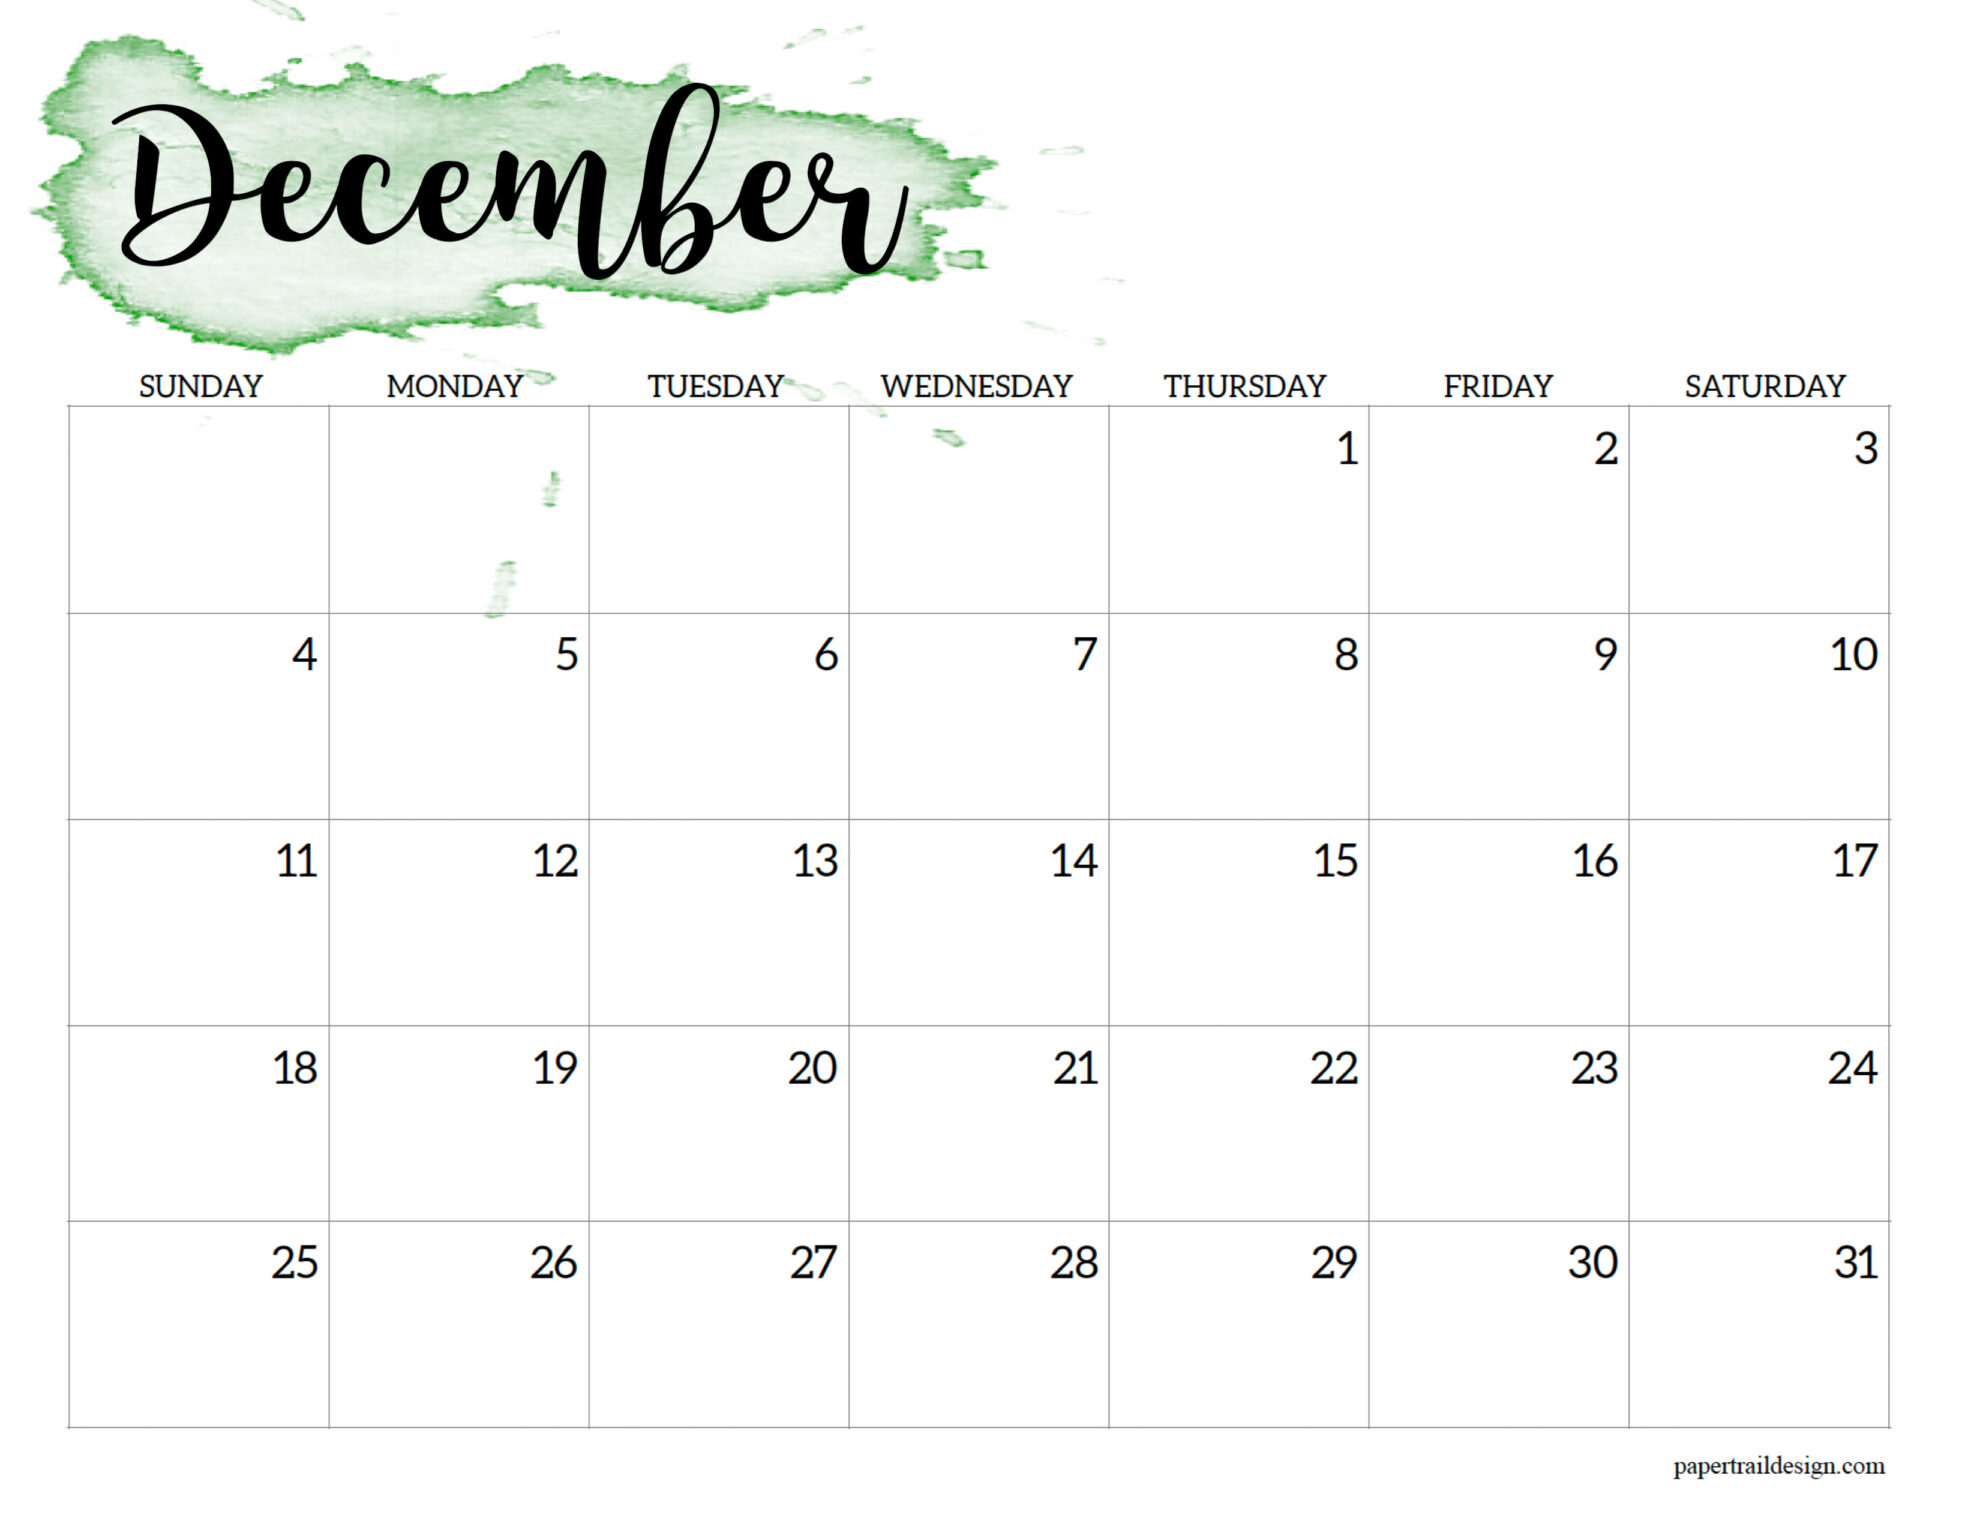 December Calendar Printable 2022 2022 Calendar Printable - Watercolor - Paper Trail Design